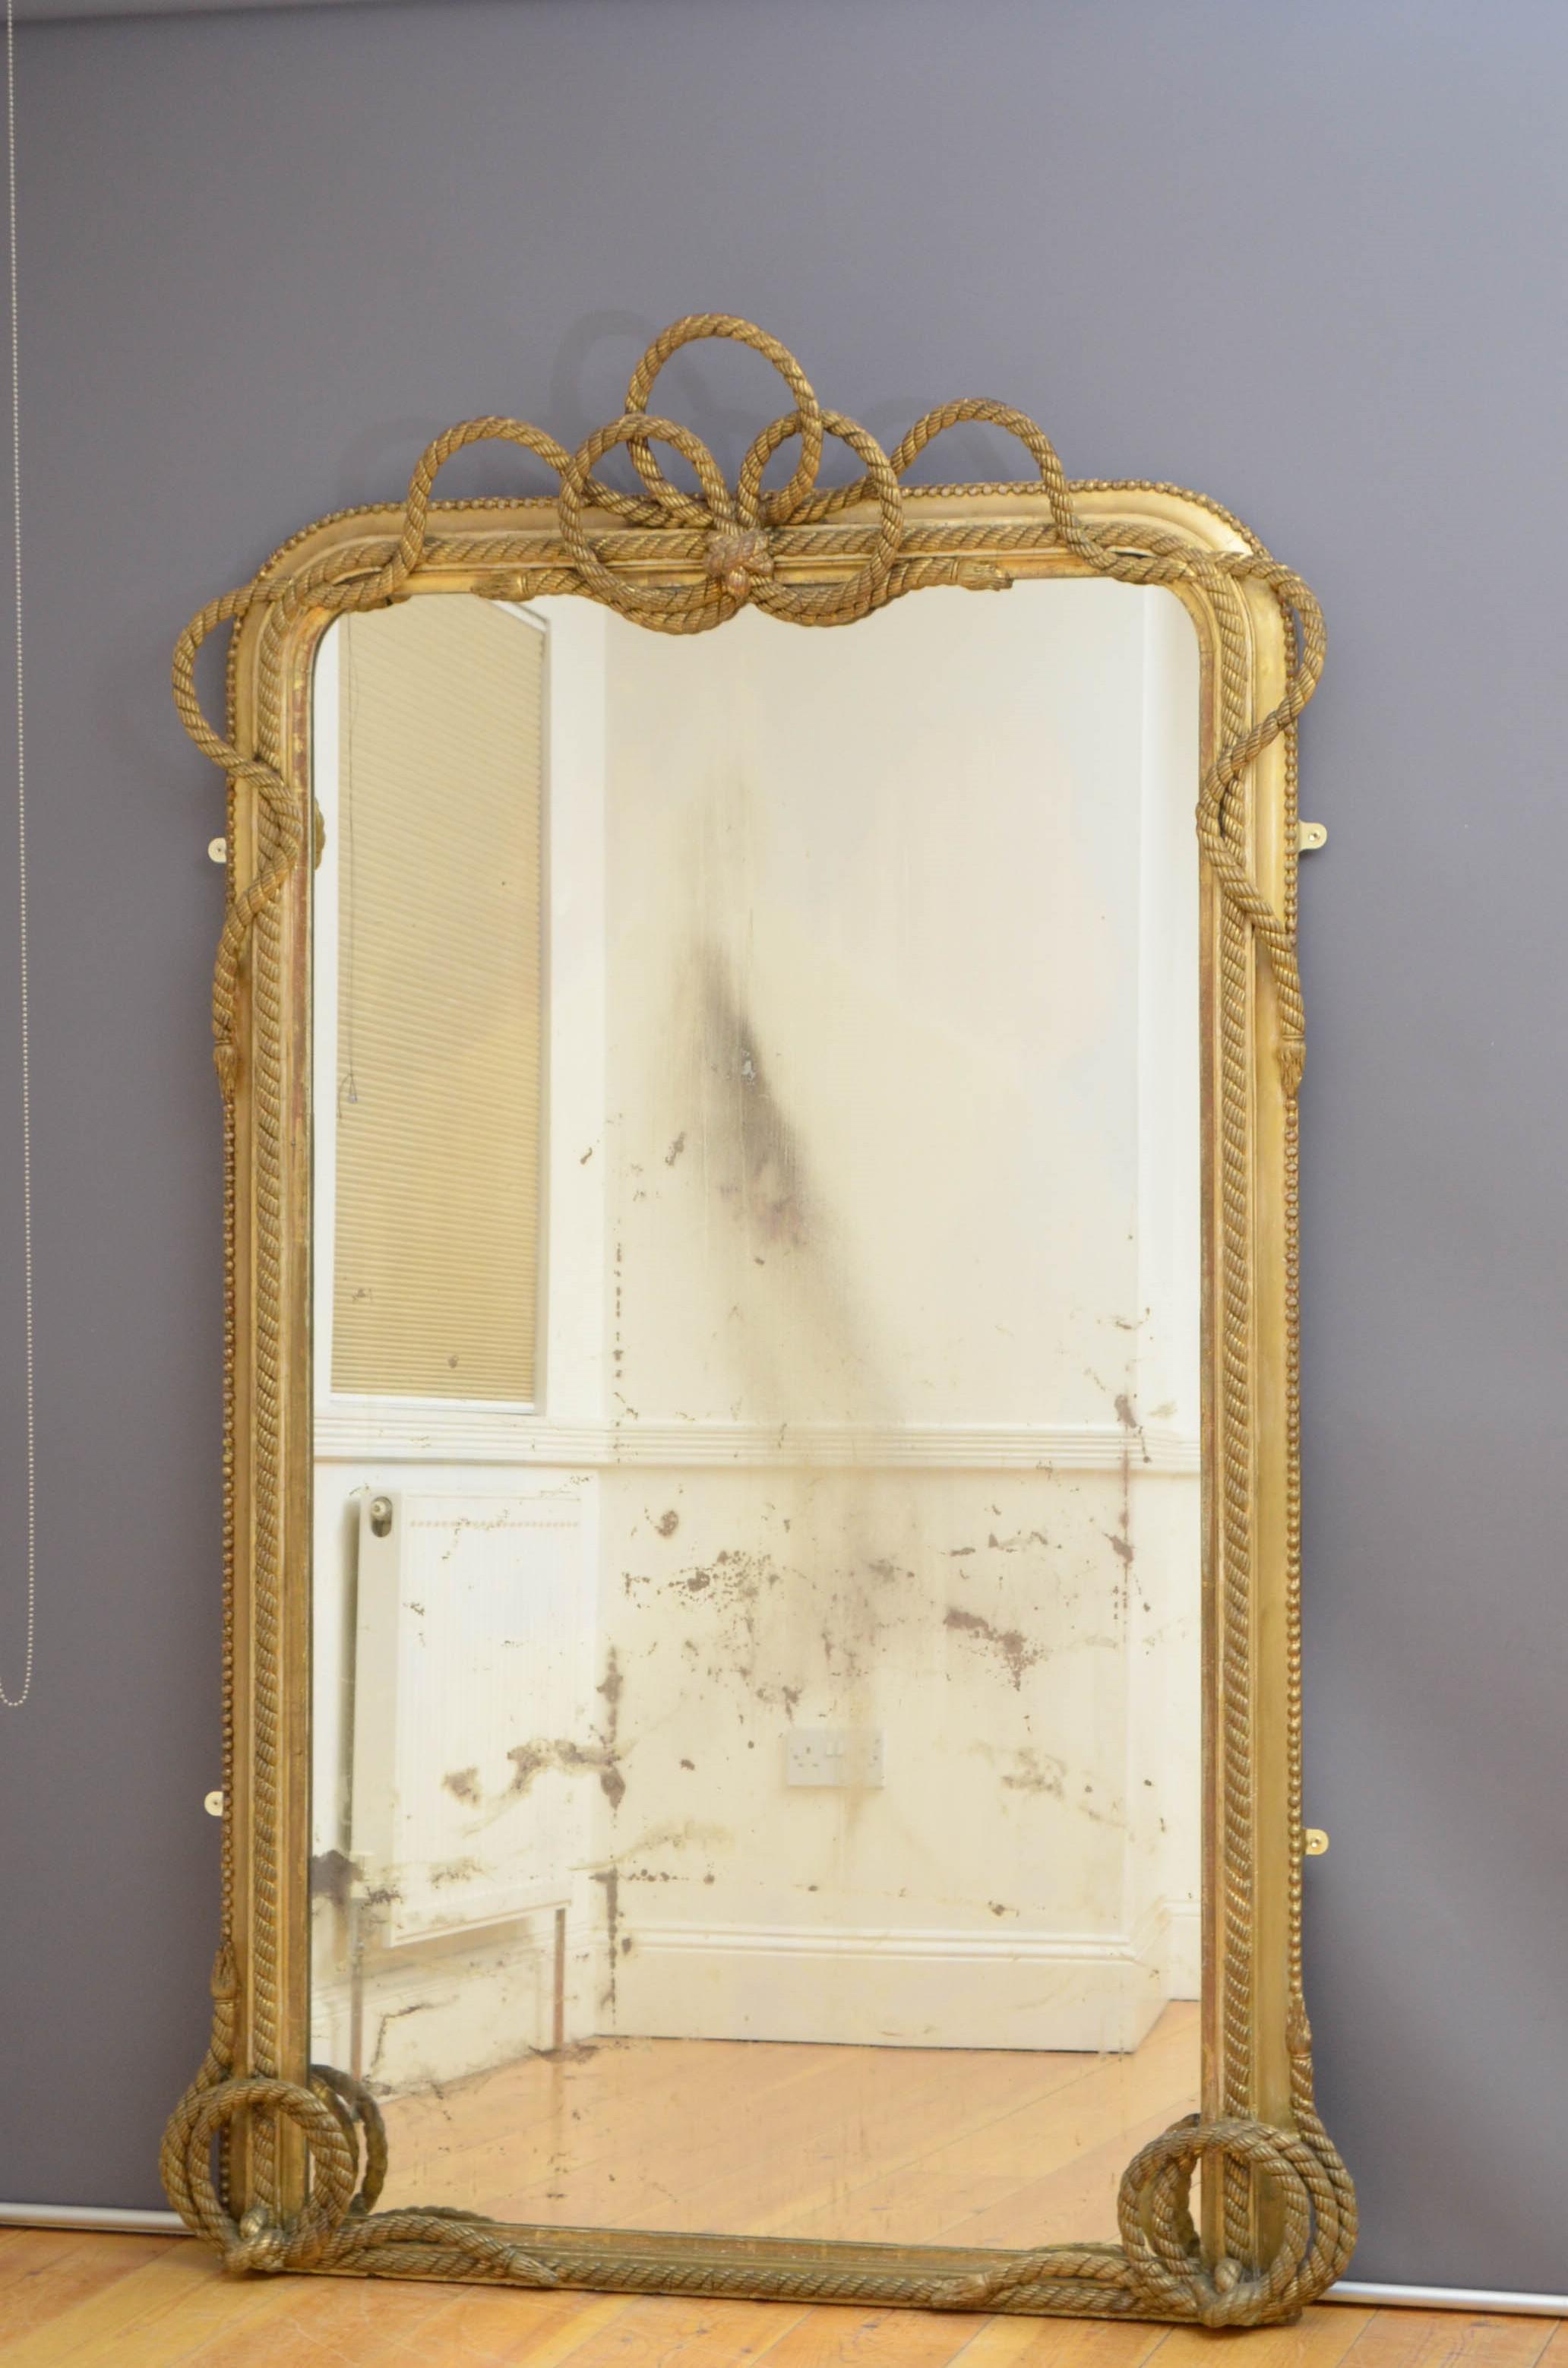 Sn5029, ein großer viktorianischer Spiegel aus dem 19. Jahrhundert in voller Länge, mit originalem Glas mit Altersspuren und Stockflecken, in einem geformten, mit Perlen besetzten und vergoldeten Rahmen mit Seilrollen an der Basis und Seildekoration